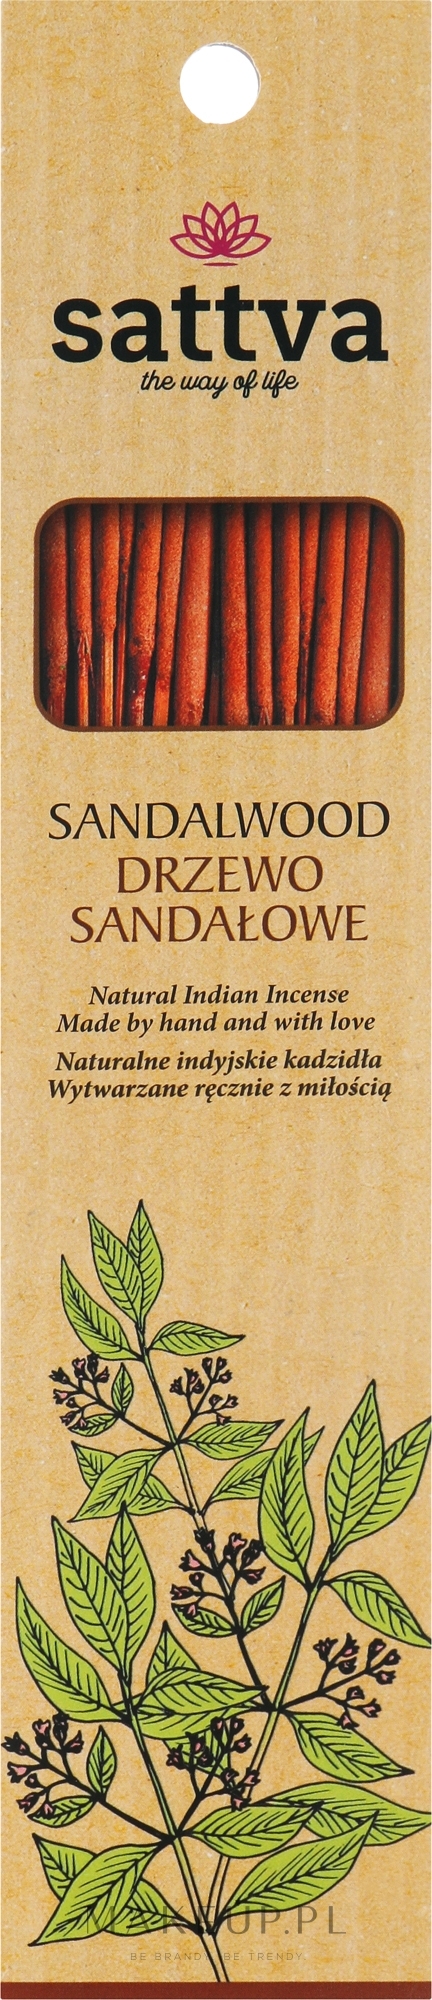 Naturalne indyjskie kadzidła Drzewo sandałowe - Sattva Sandalwood — Zdjęcie 15 szt.